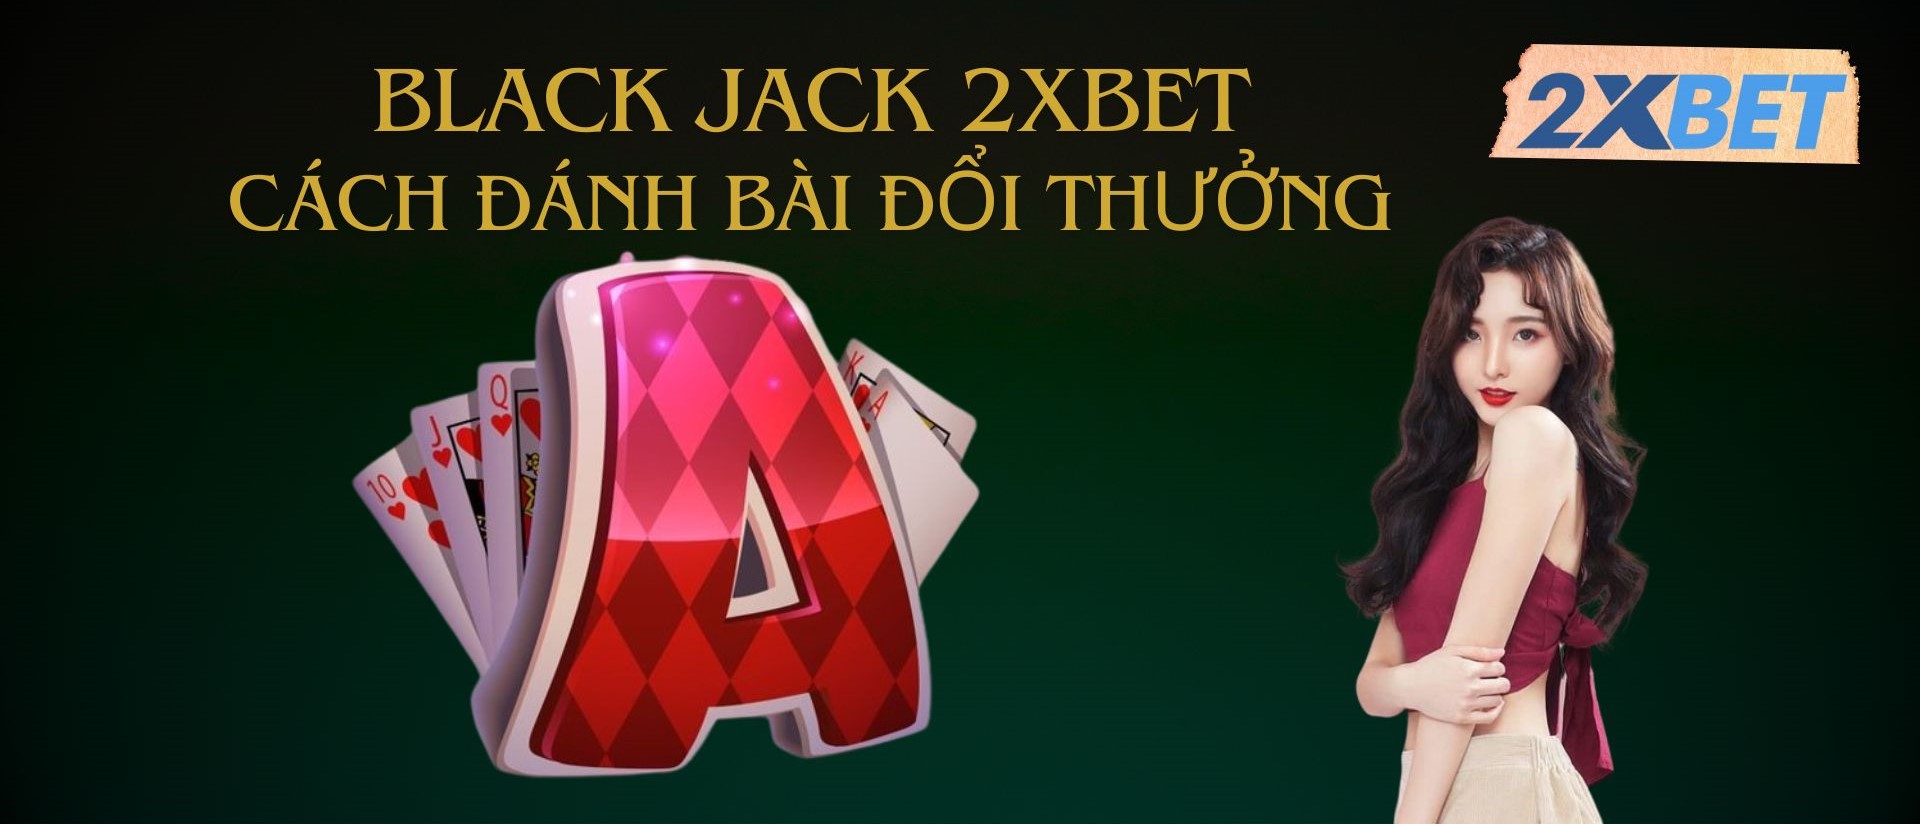 Sơ lược về game bài Black jack 2XBET